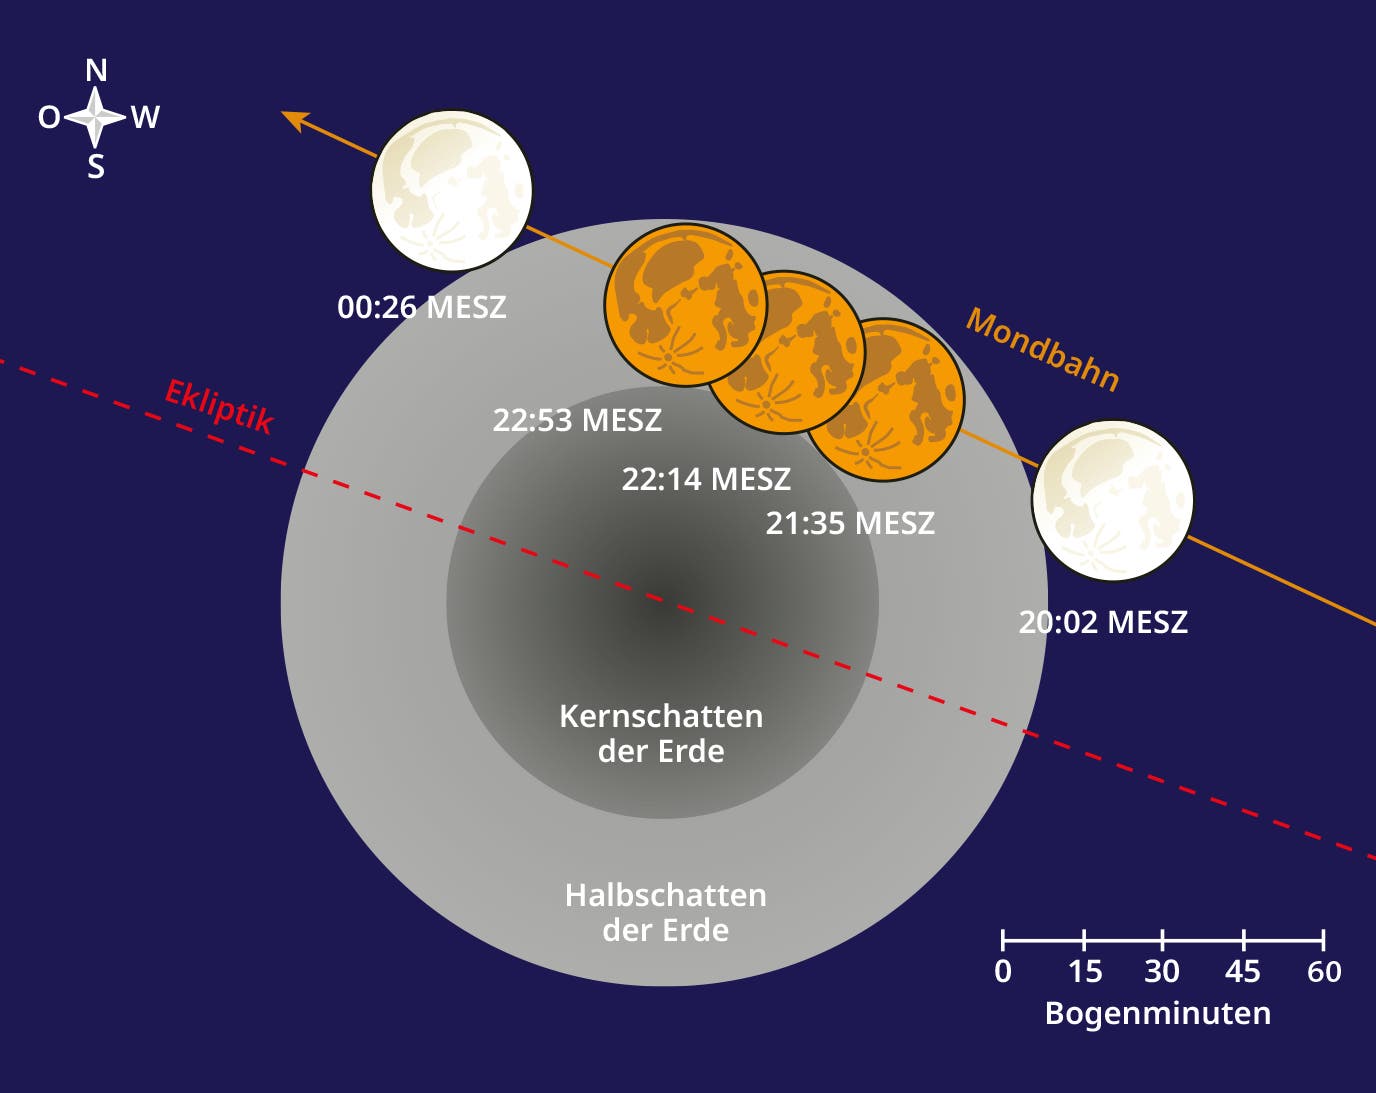 Grafische Darstellung des zeitlichen Verlaufs der partiellen Mondfinsternis. Man sieht den Halb- und Kernschatten der Erde und die Position des Mondes zu verschiedenen Zeitpunkten.